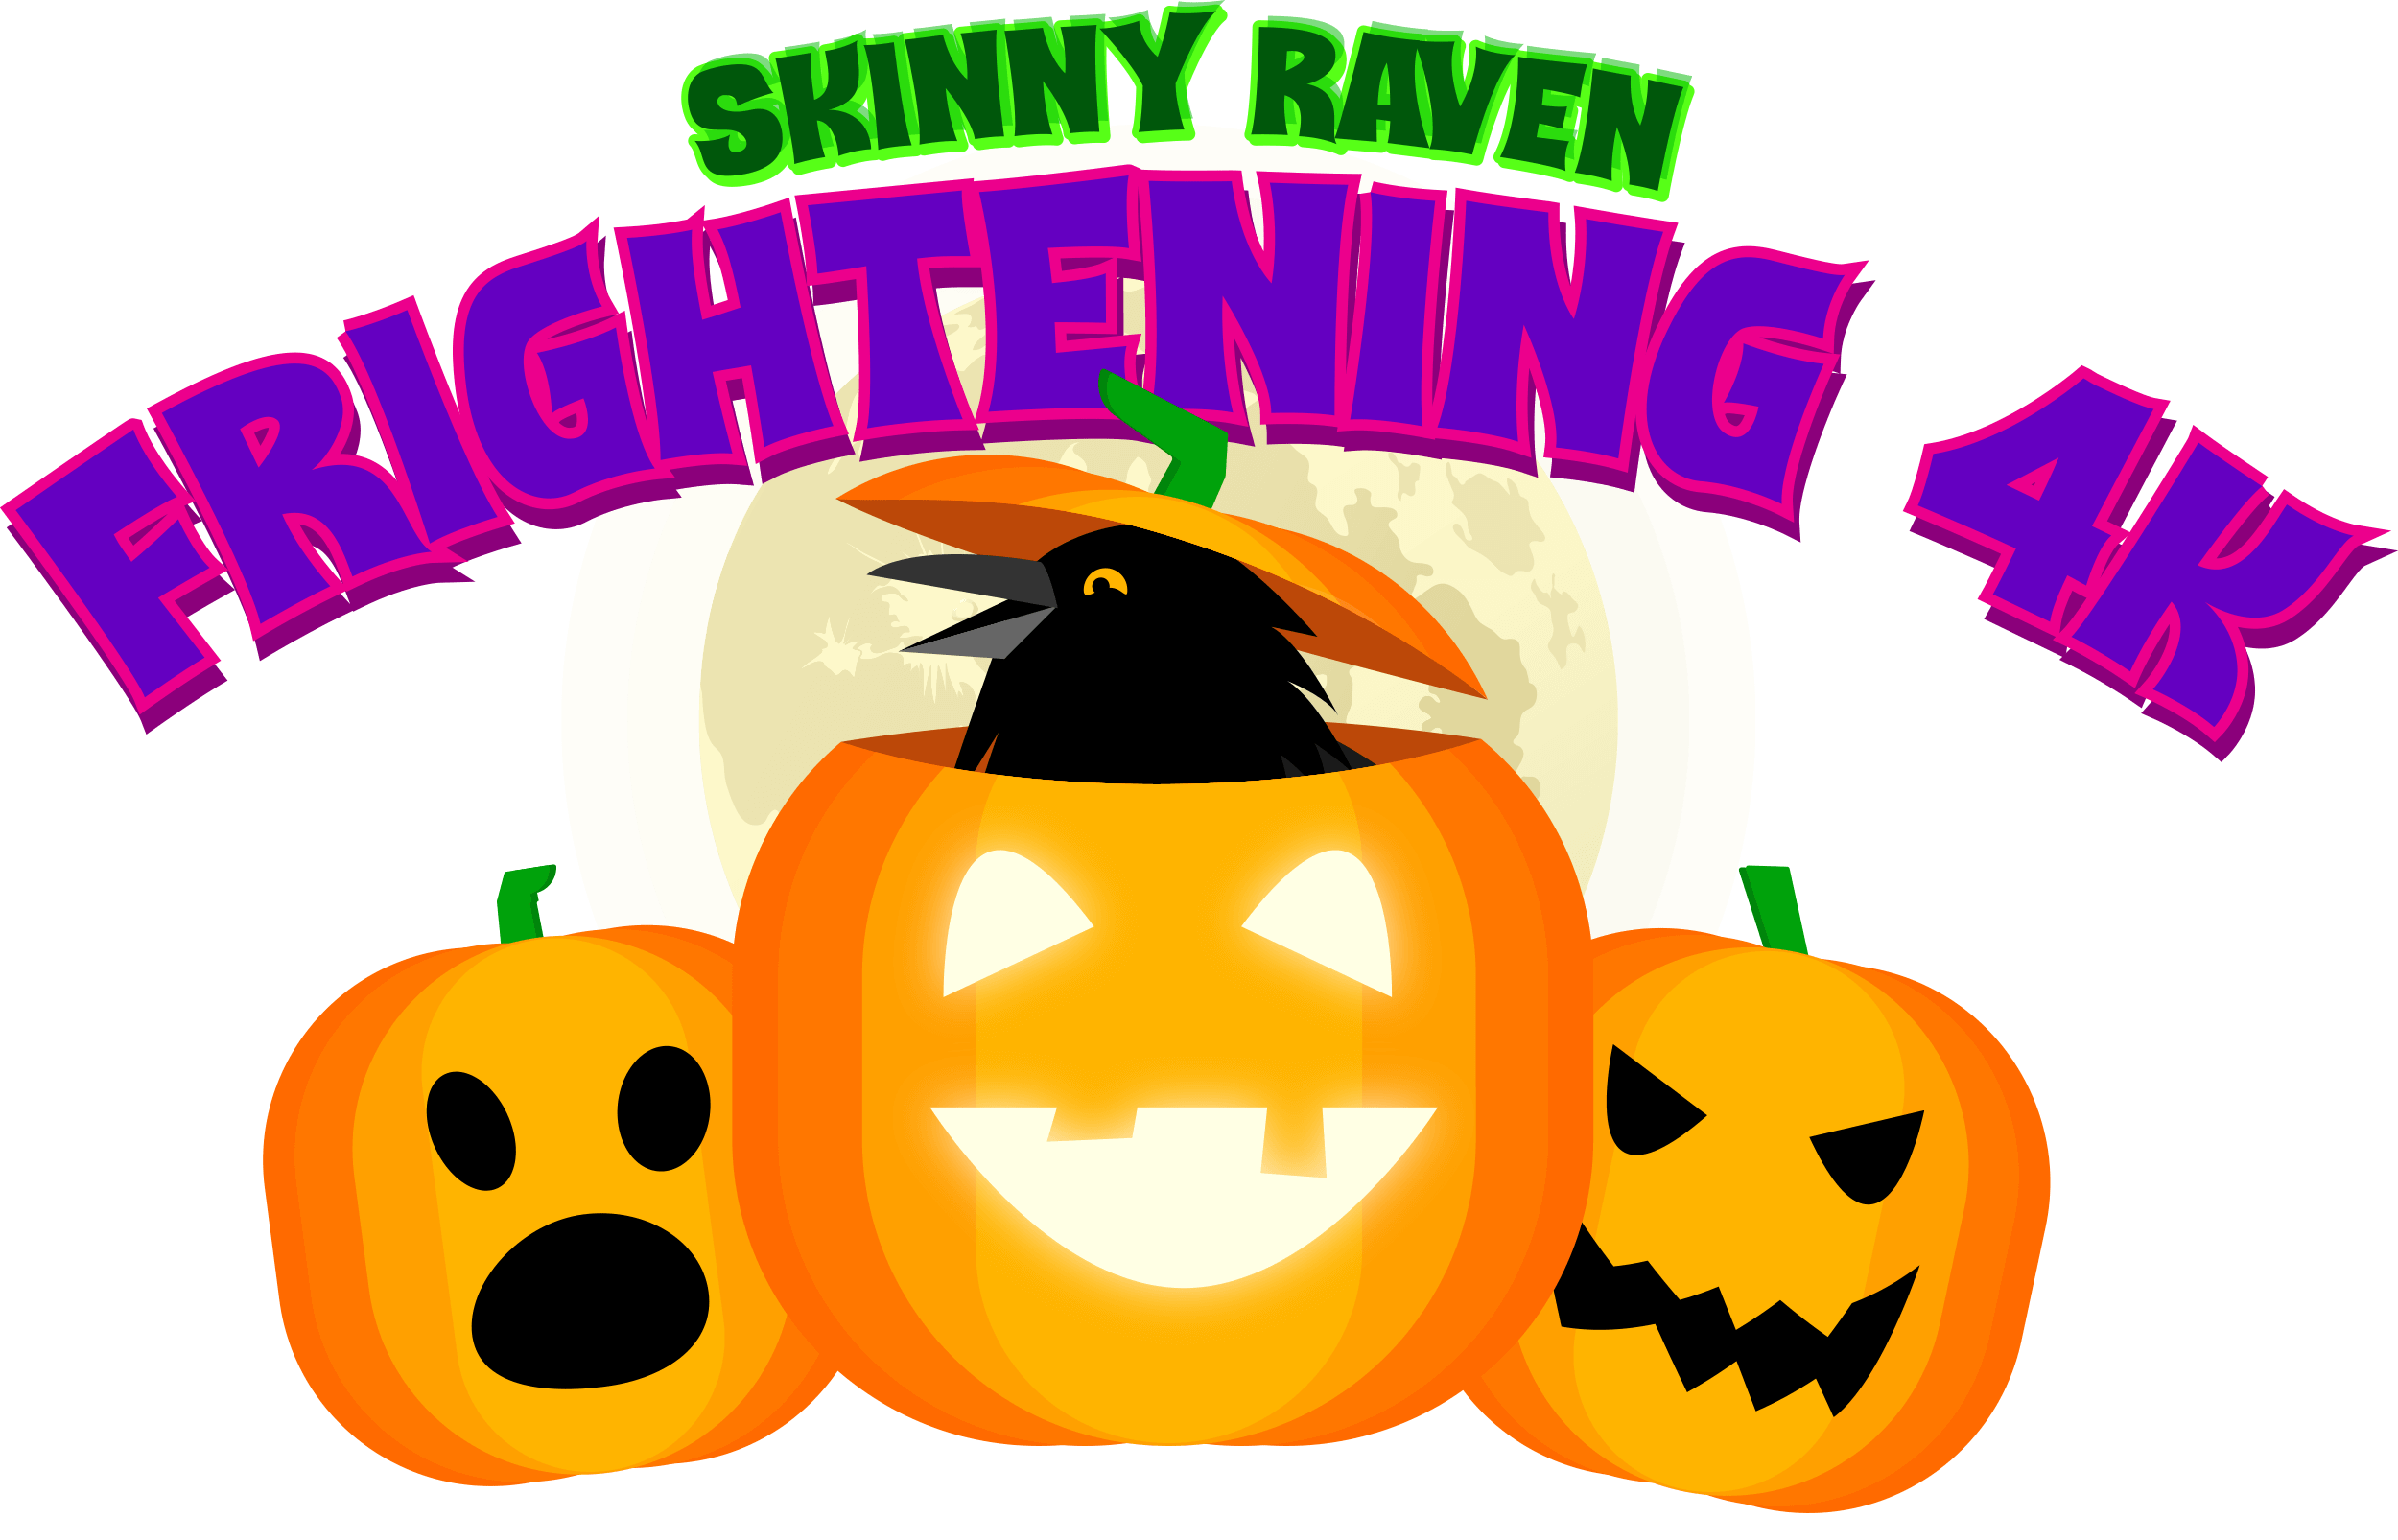 Skinny Raven Frightening 4K logo on RaceRaves